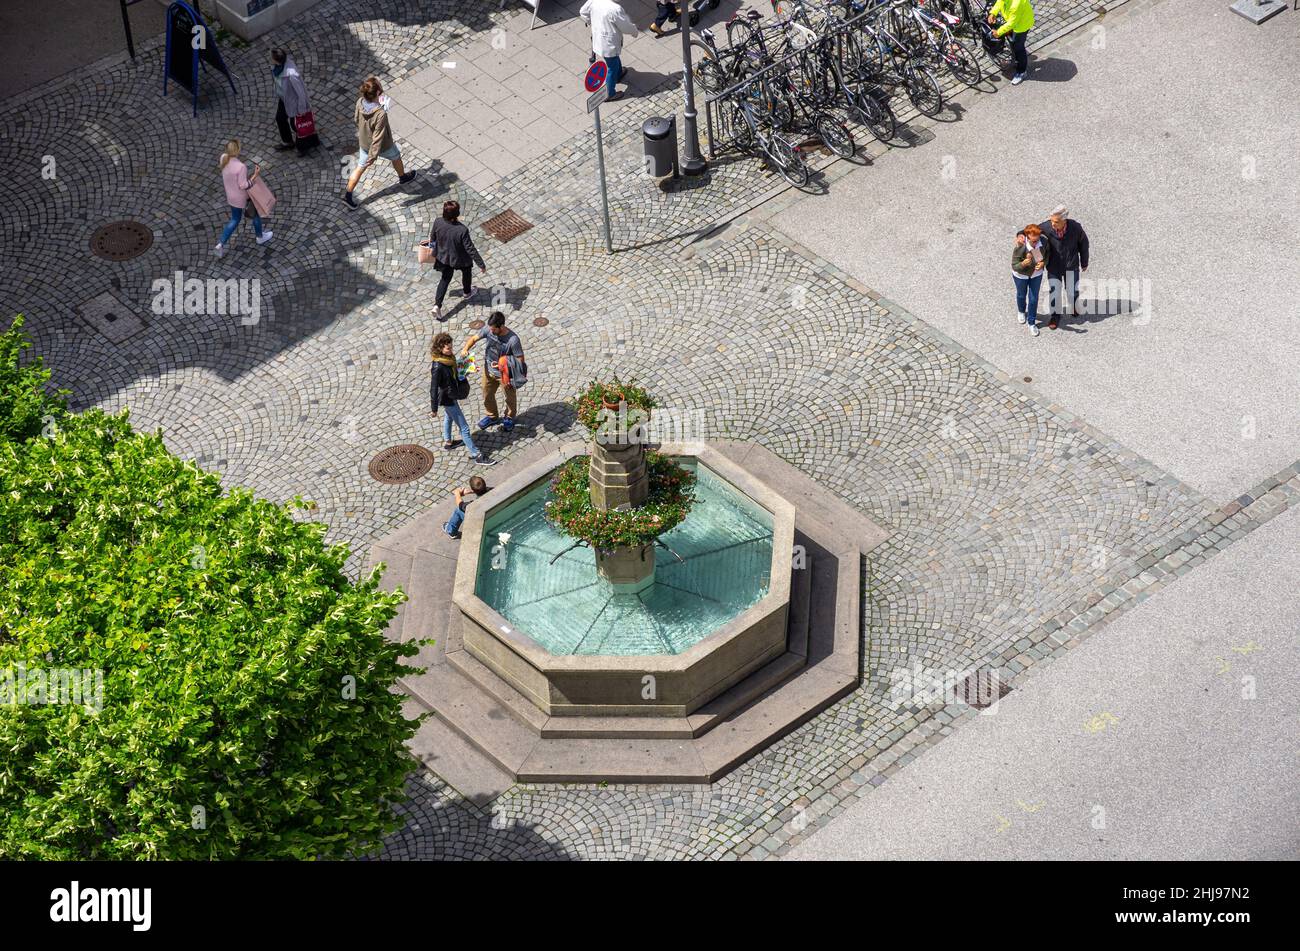 Ravensburg, Bade-Wurtemberg, Allemagne: Scène urbaine de rue autour de la fontaine sur Marienplatz, vue vers le bas de la tour Blaser, 7 juin 2017. Banque D'Images